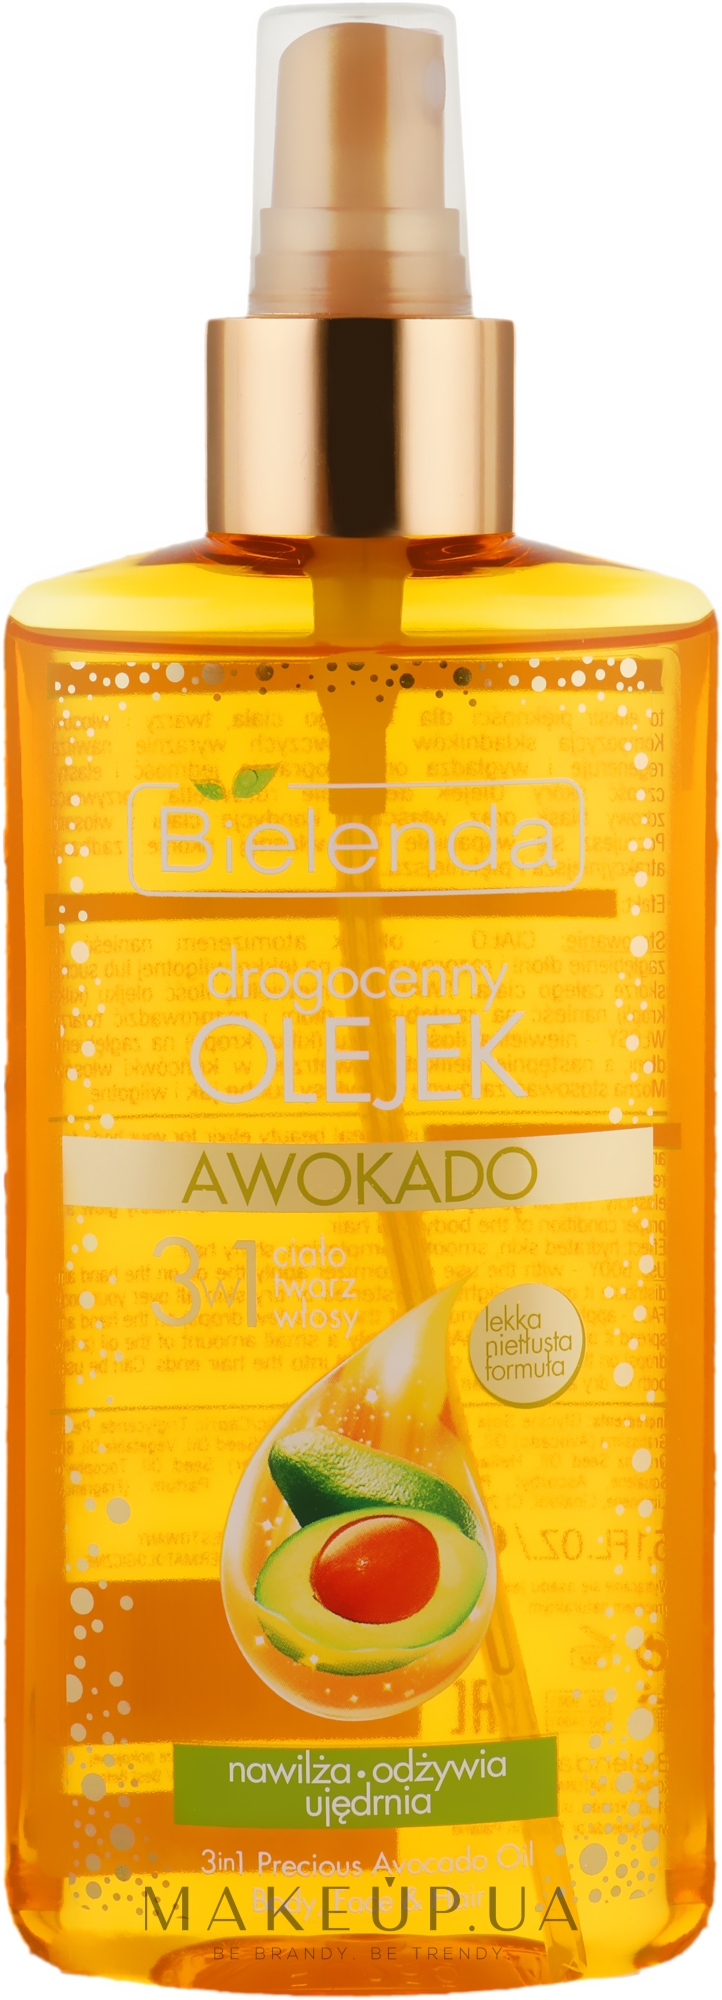 Масло авокадо 3 в 1 для тела, лица и волос - Bielenda Drogocenny Olejek  — фото 150ml